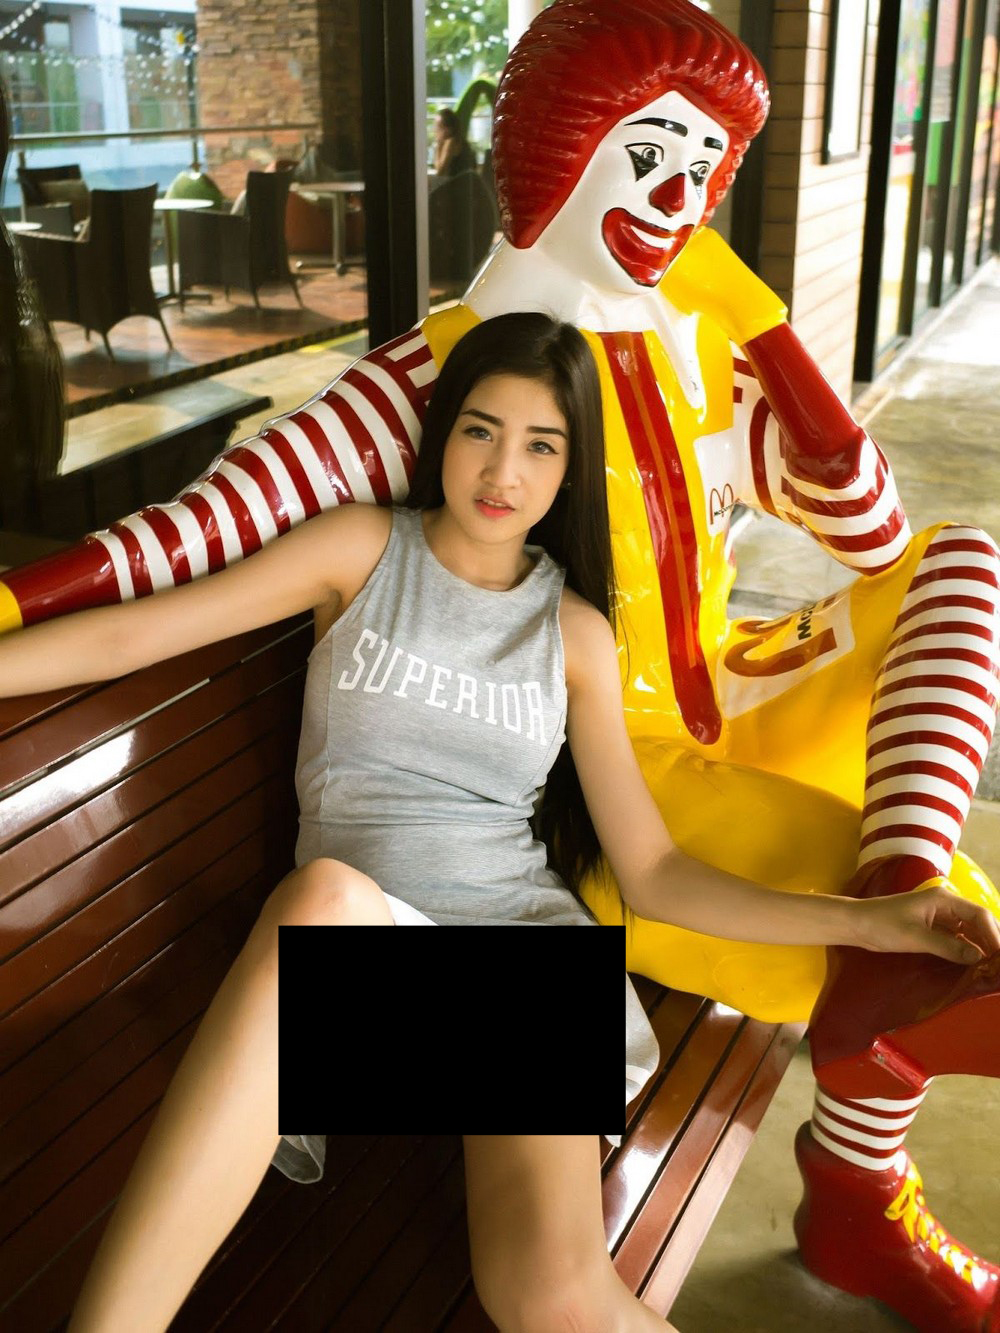 Загвар өмсөгч бүсгүйн нууц зургийг McDonald's маркетинг гэж ойлгох хүн их байжээ